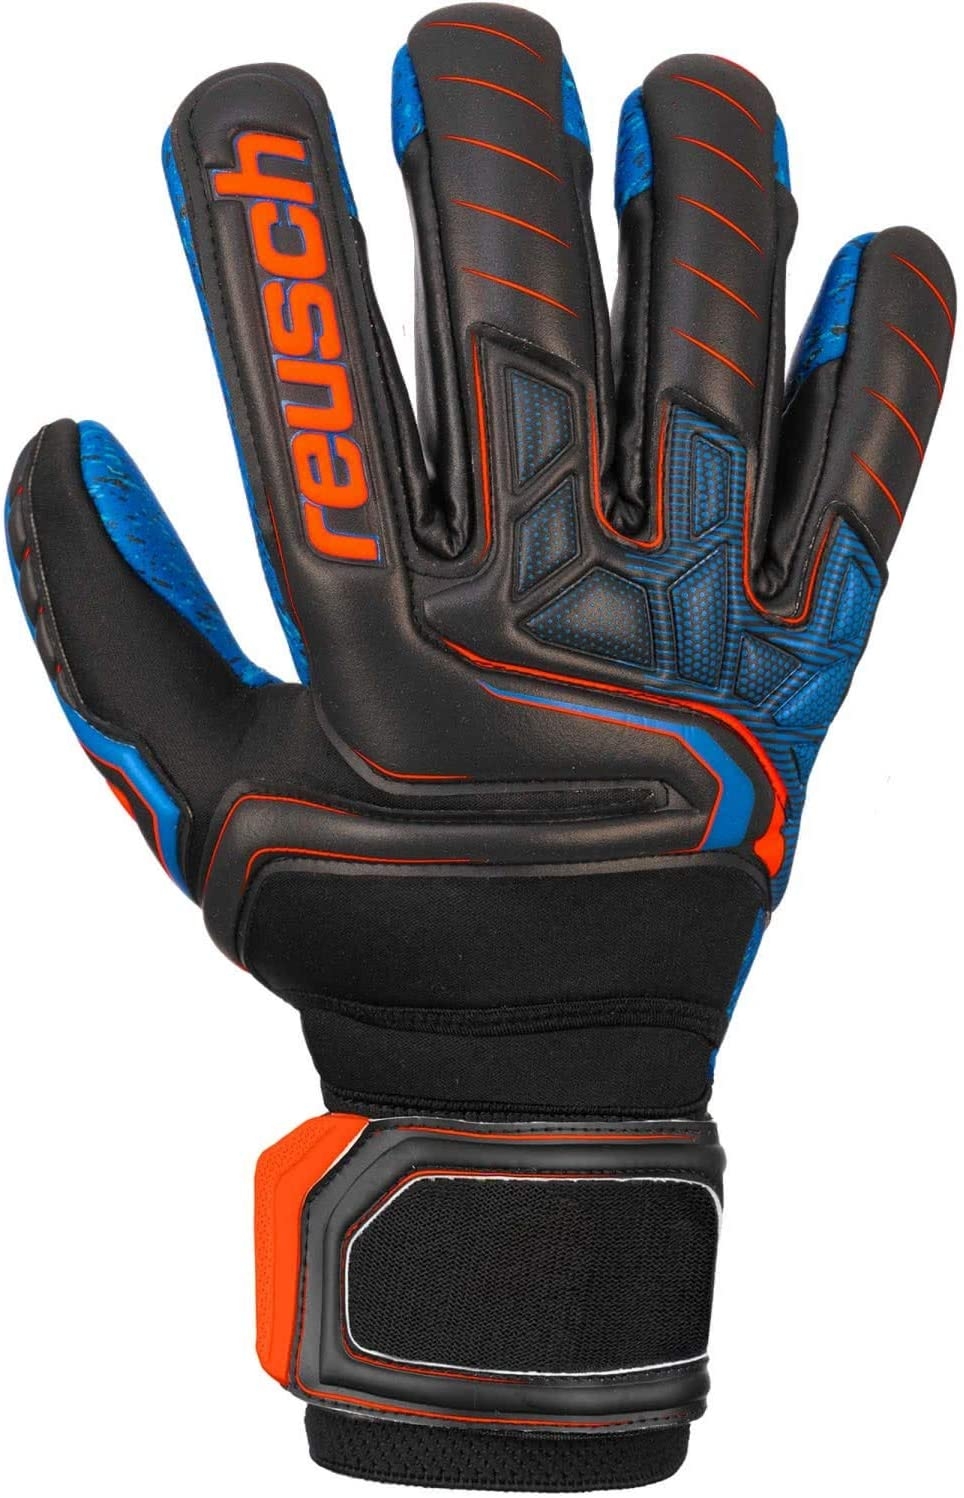 Reusch Attrakt G3 Fusion Evolution Nc Guardian TW-Handschuh 5070968 schwarz orange